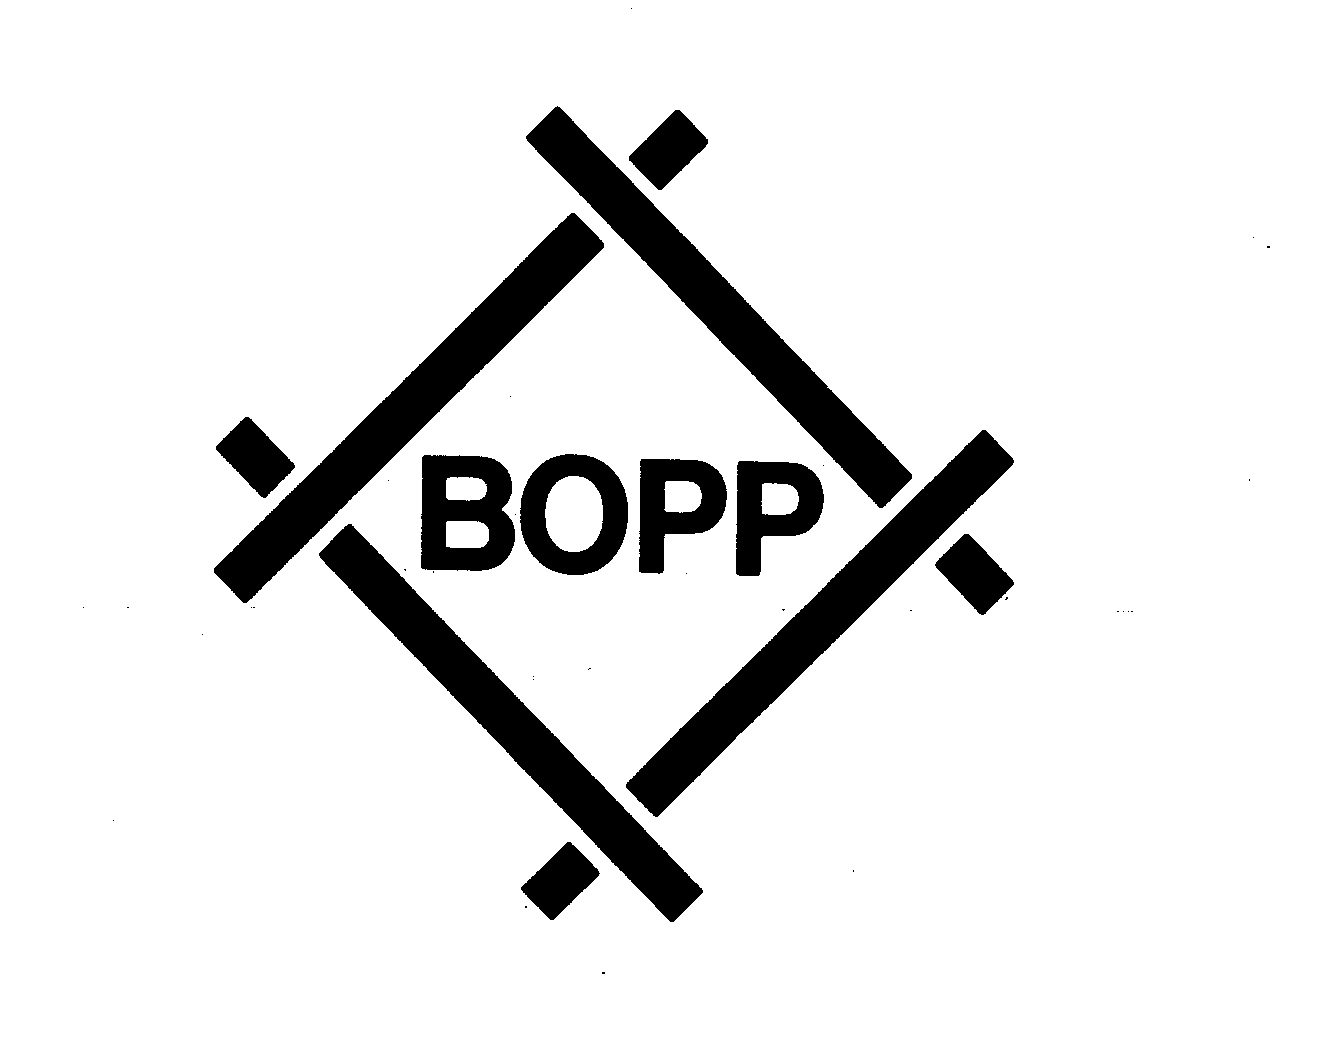 BOPP